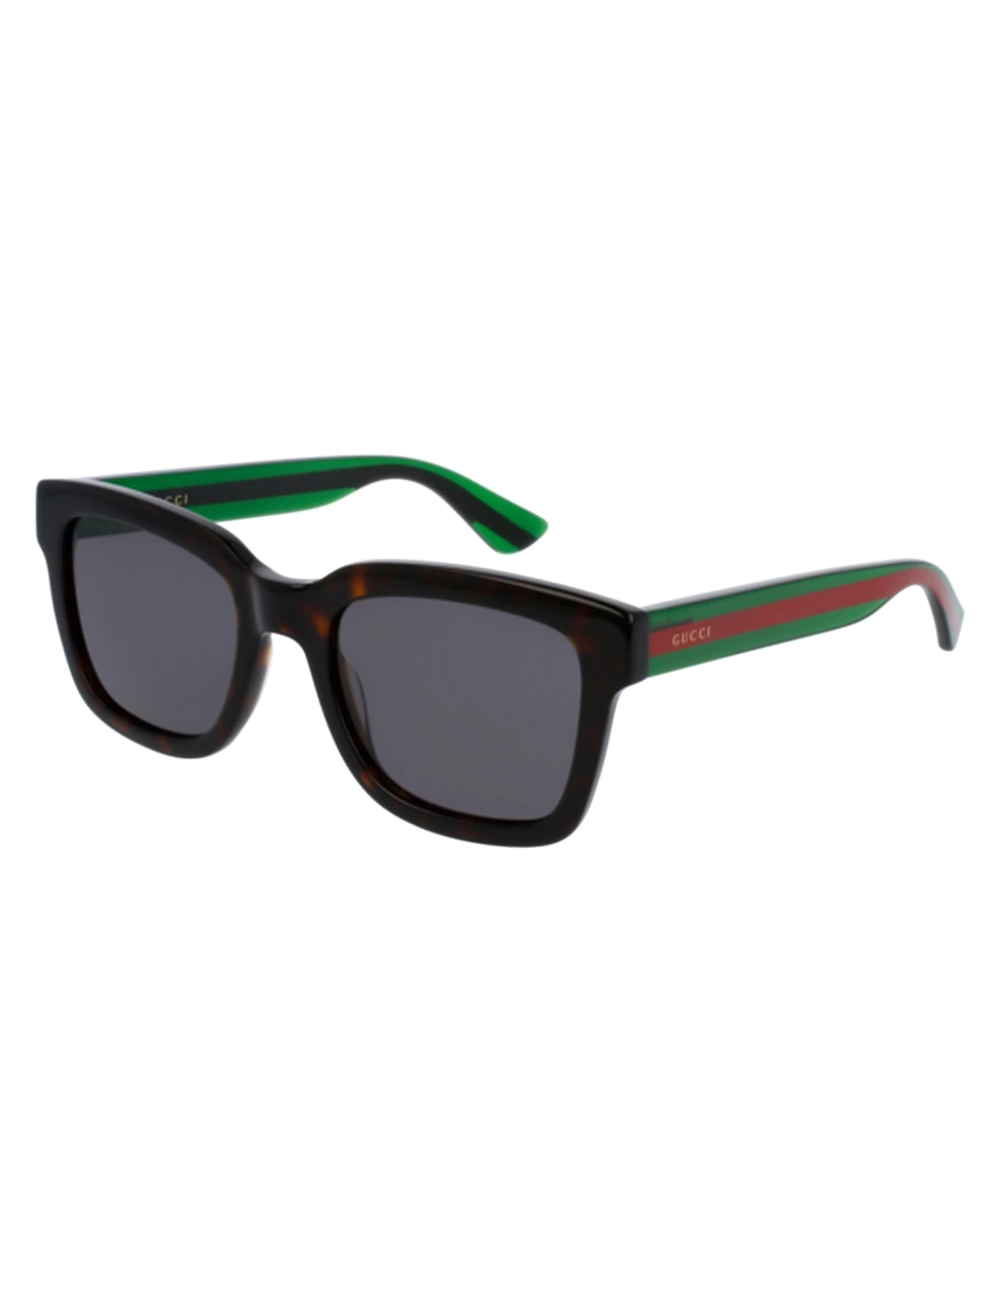 Gucci 003 sunglasses for men – Ottica